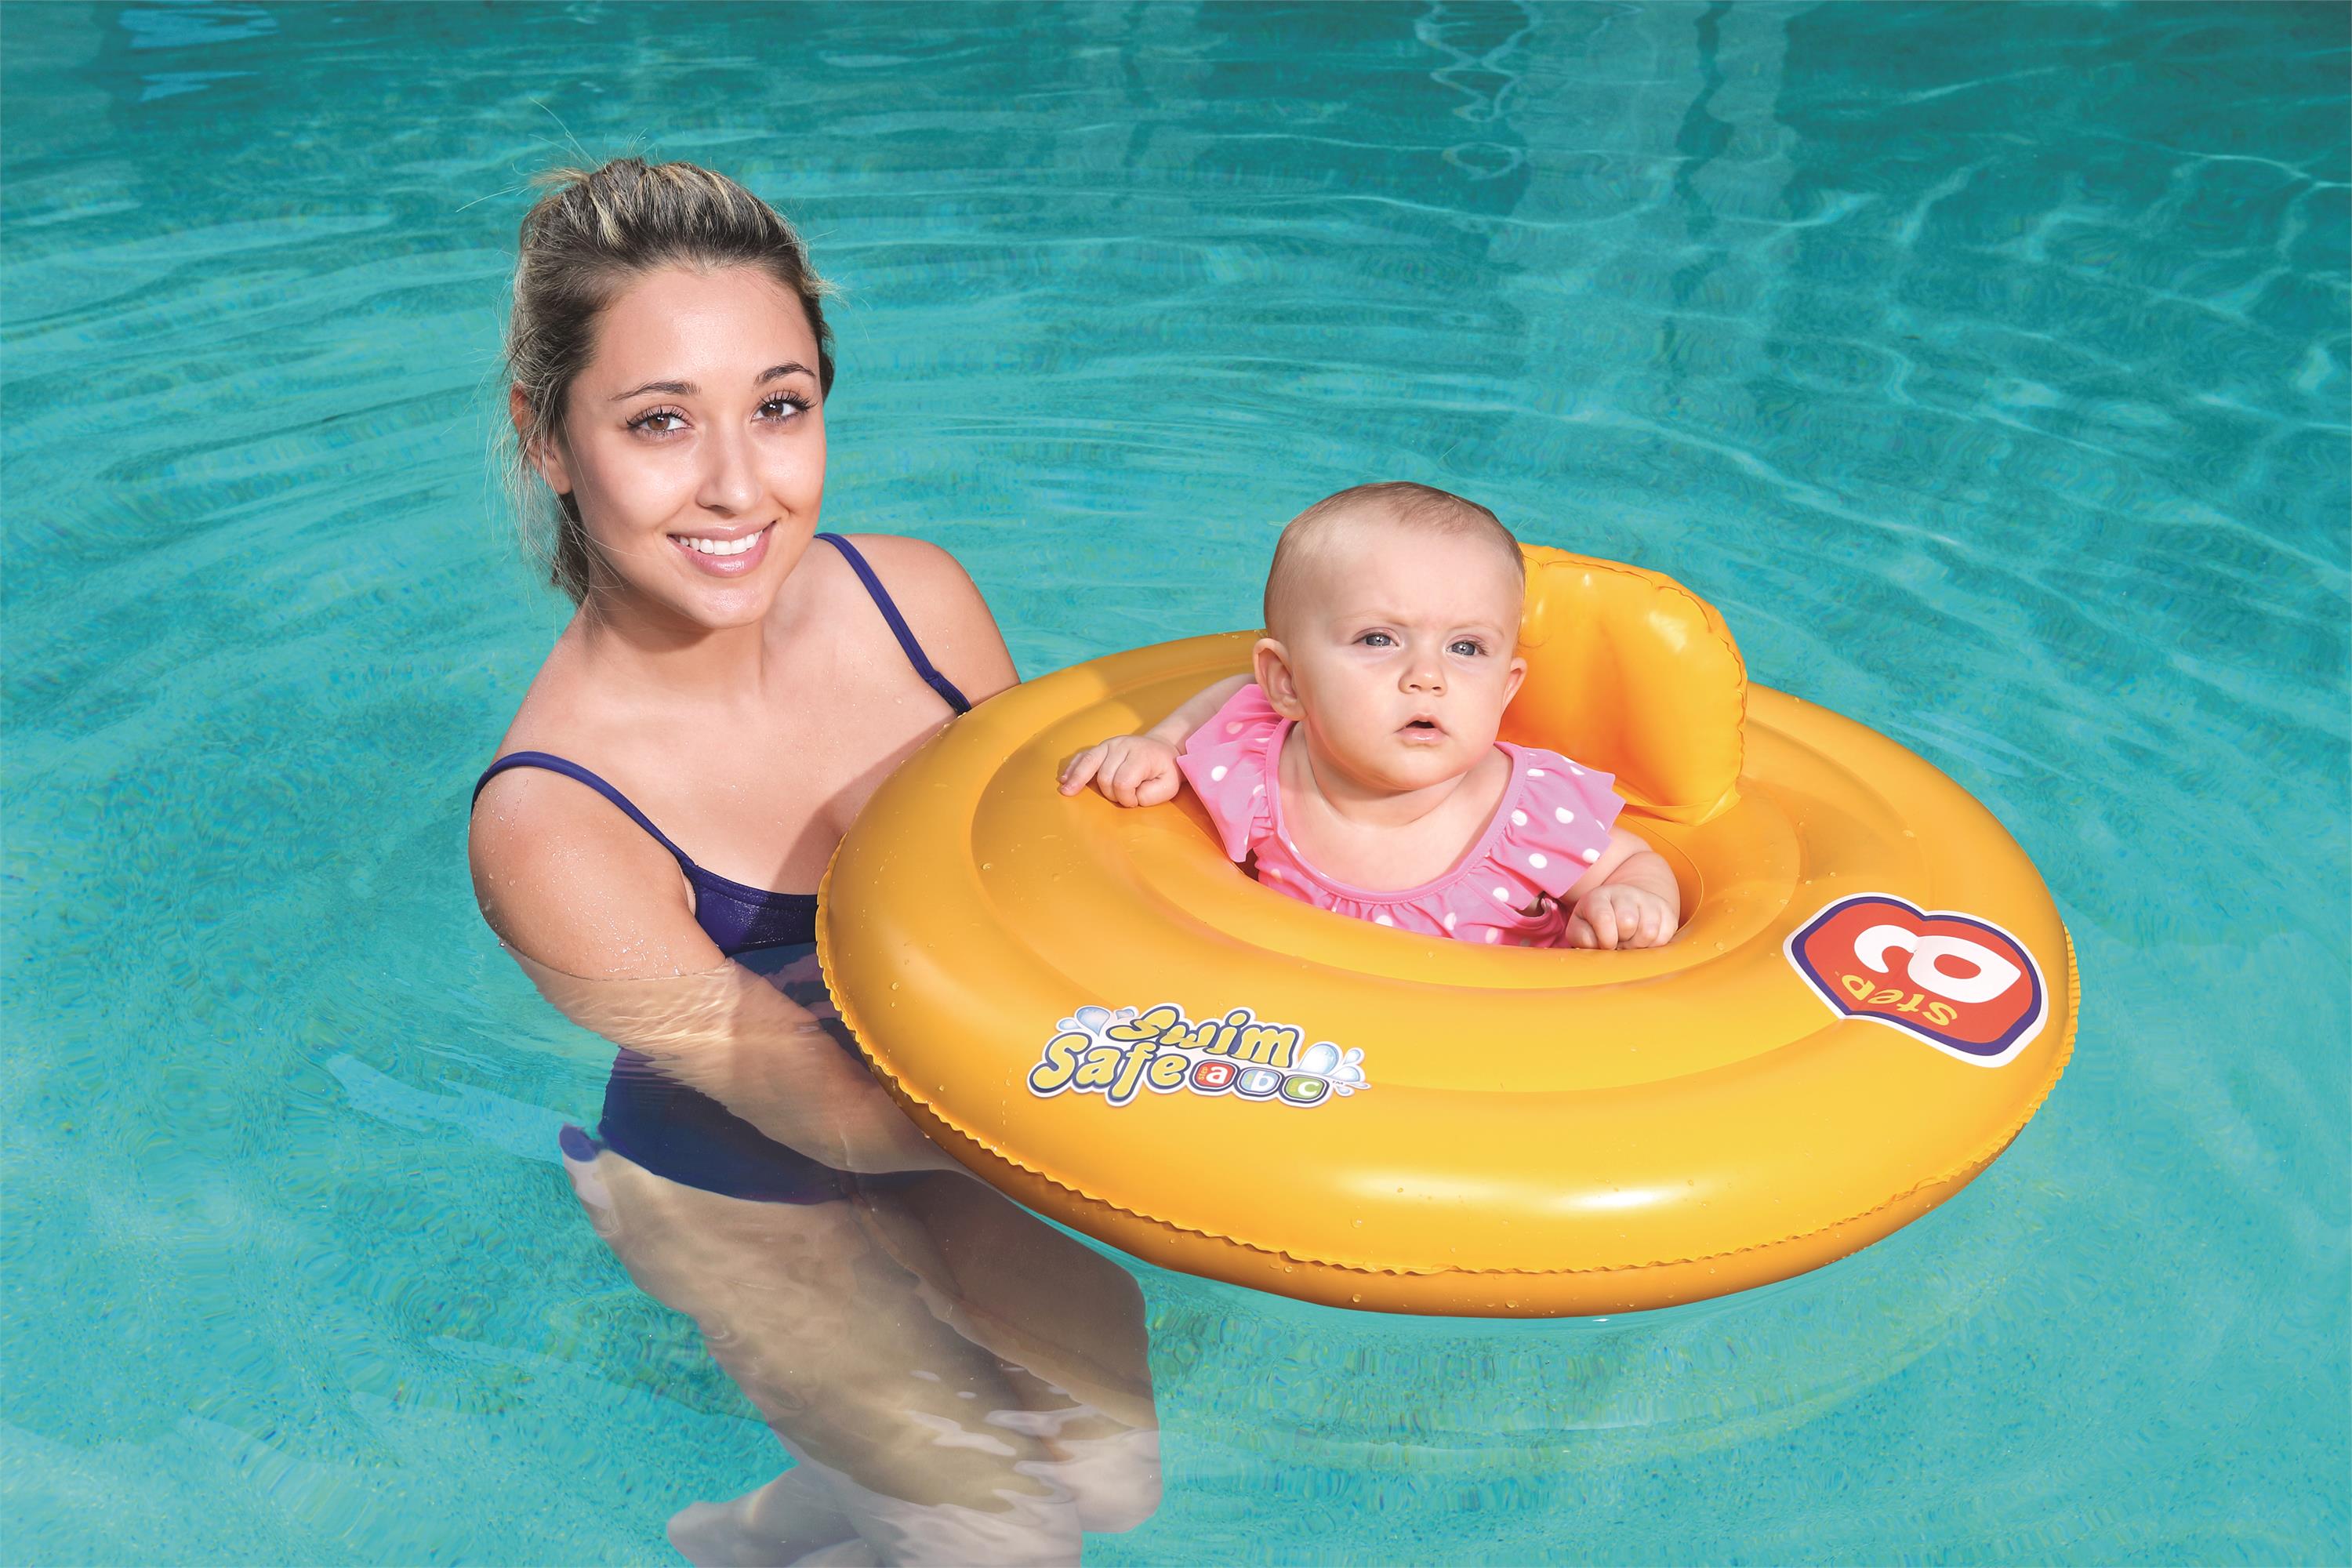 Swim Safe™ Φ27"/Φ69cm 尿布式婴儿座圈详情图1